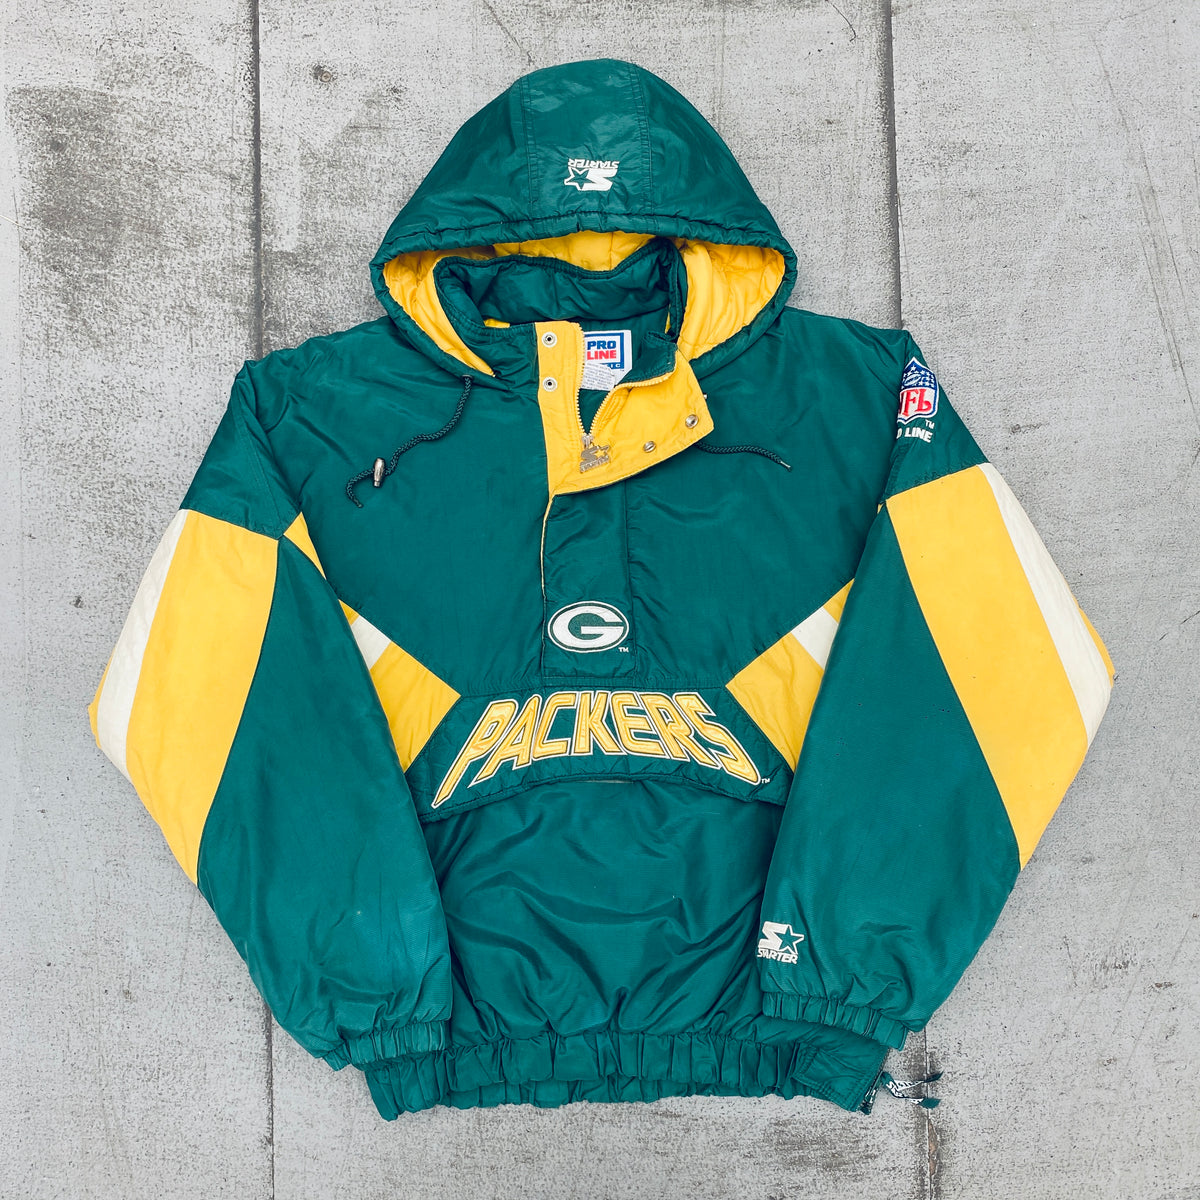 Green Bay Packers: 1990's 1/4 Zip Proline Starter Breakaway Jacket